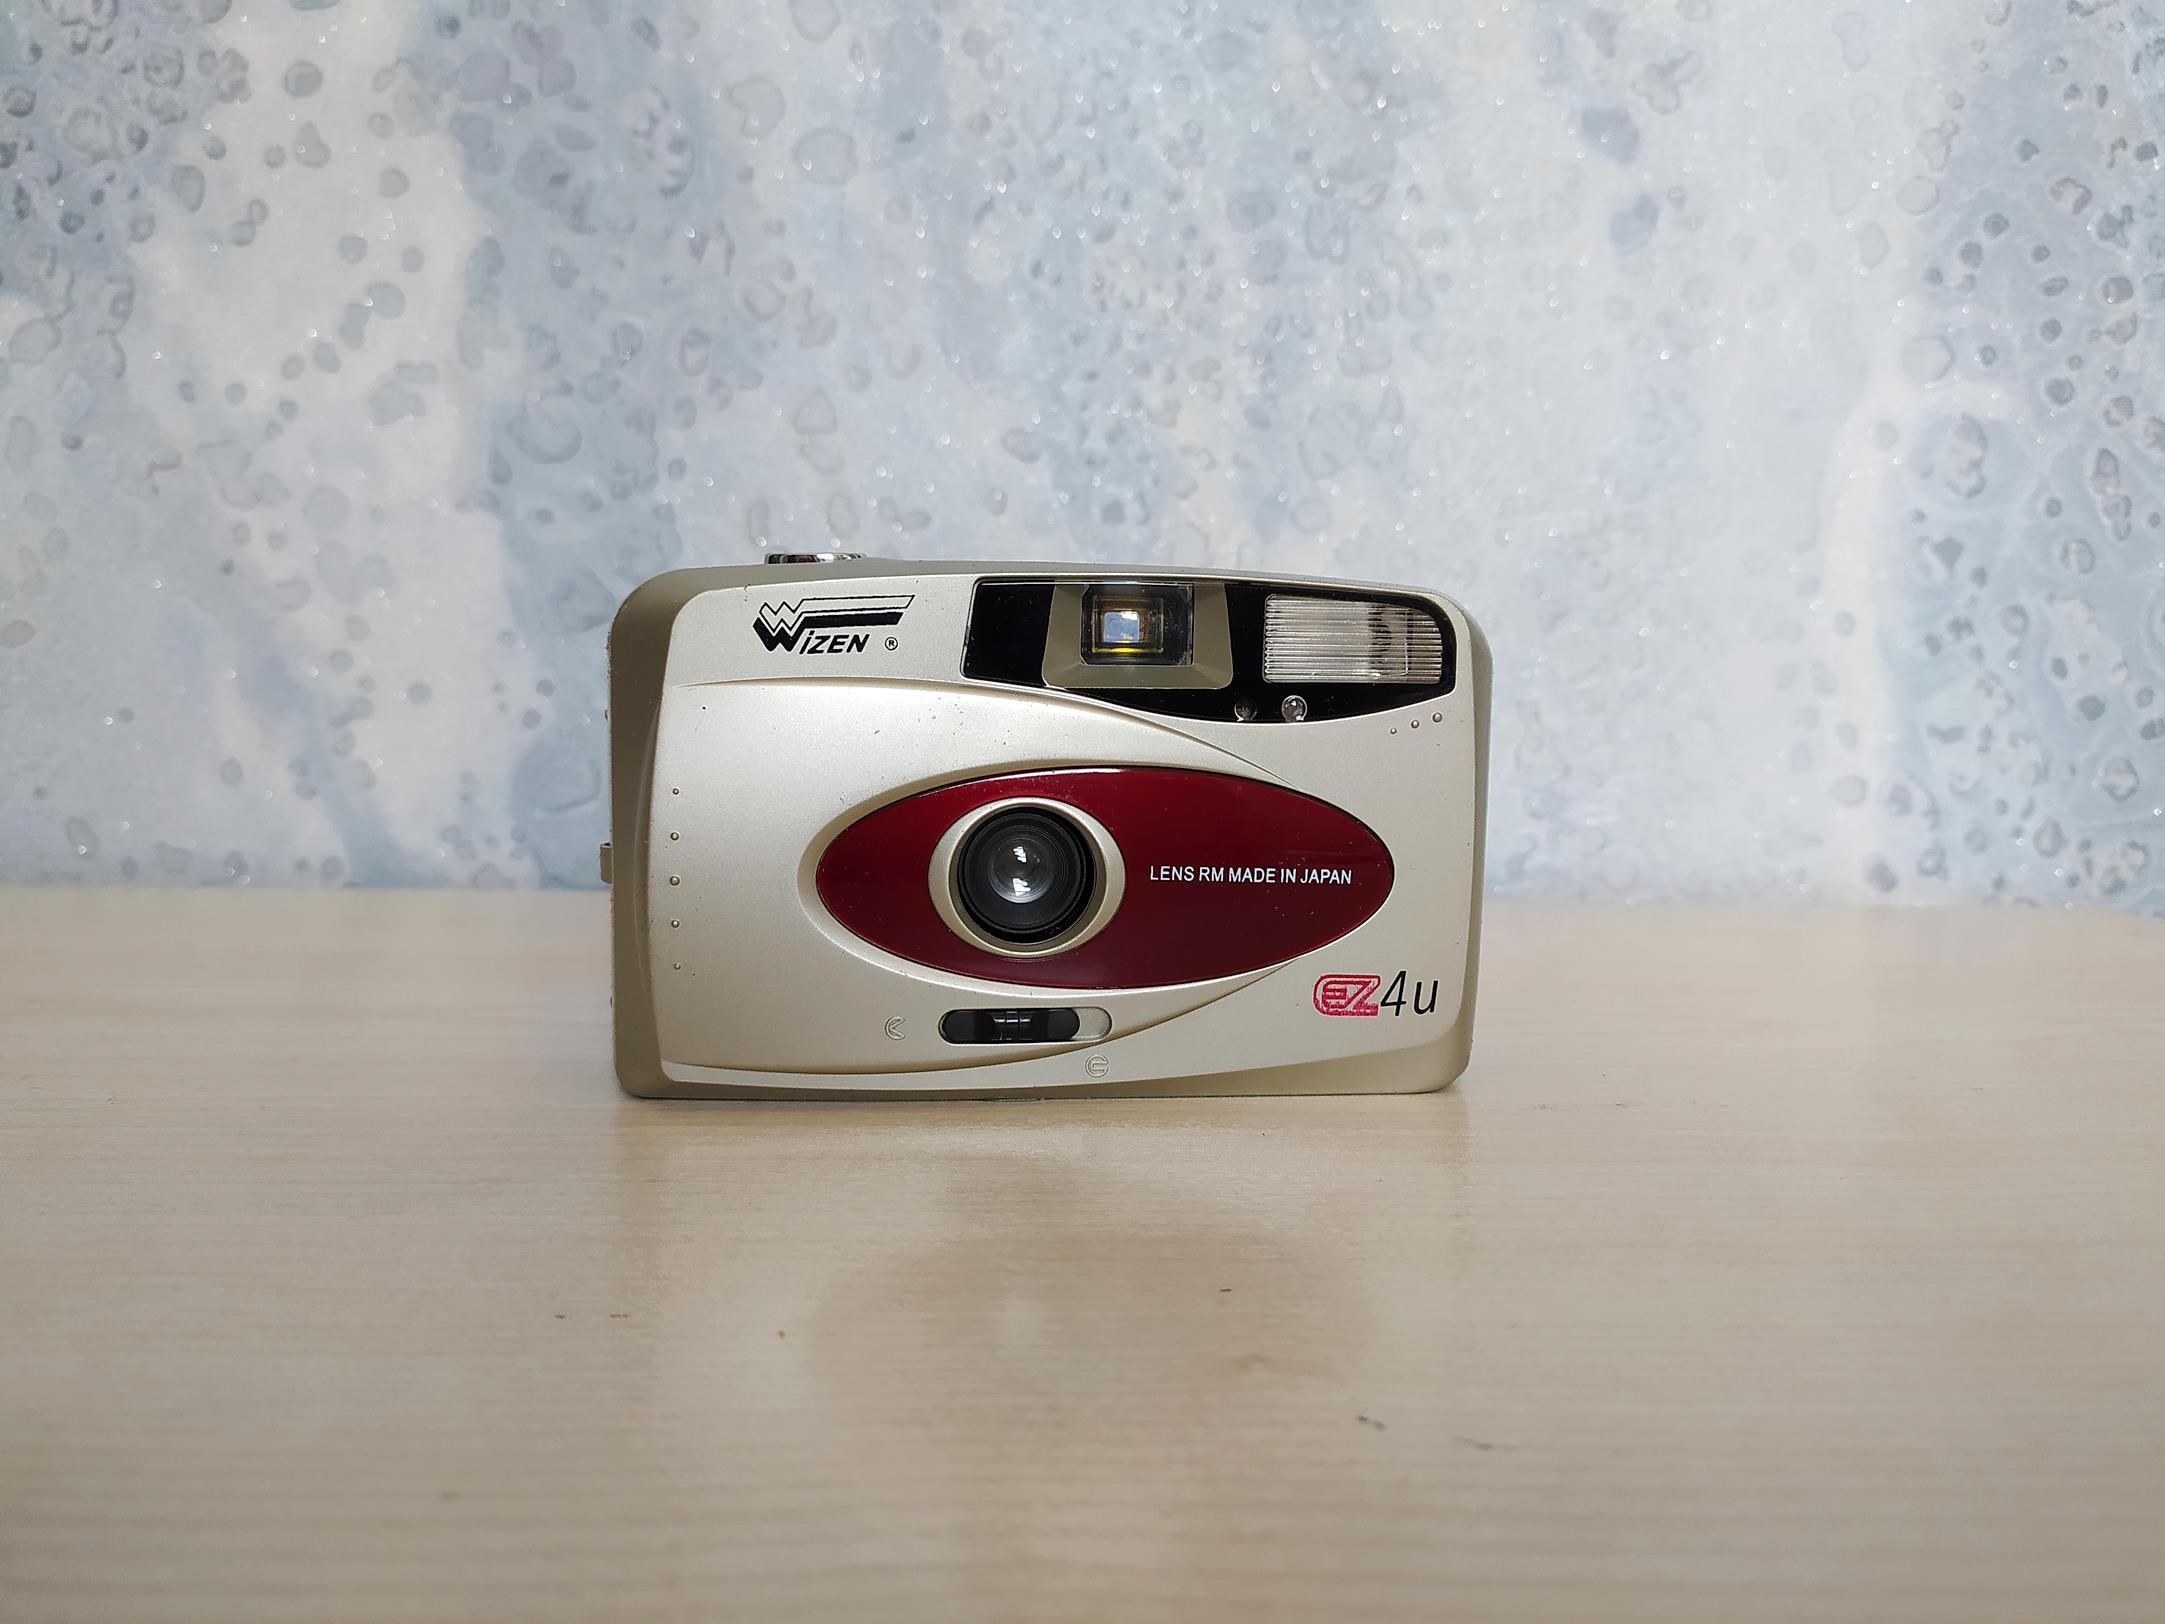 دوربین قدیمی WIZEN EZ 4U همراه با جعبه